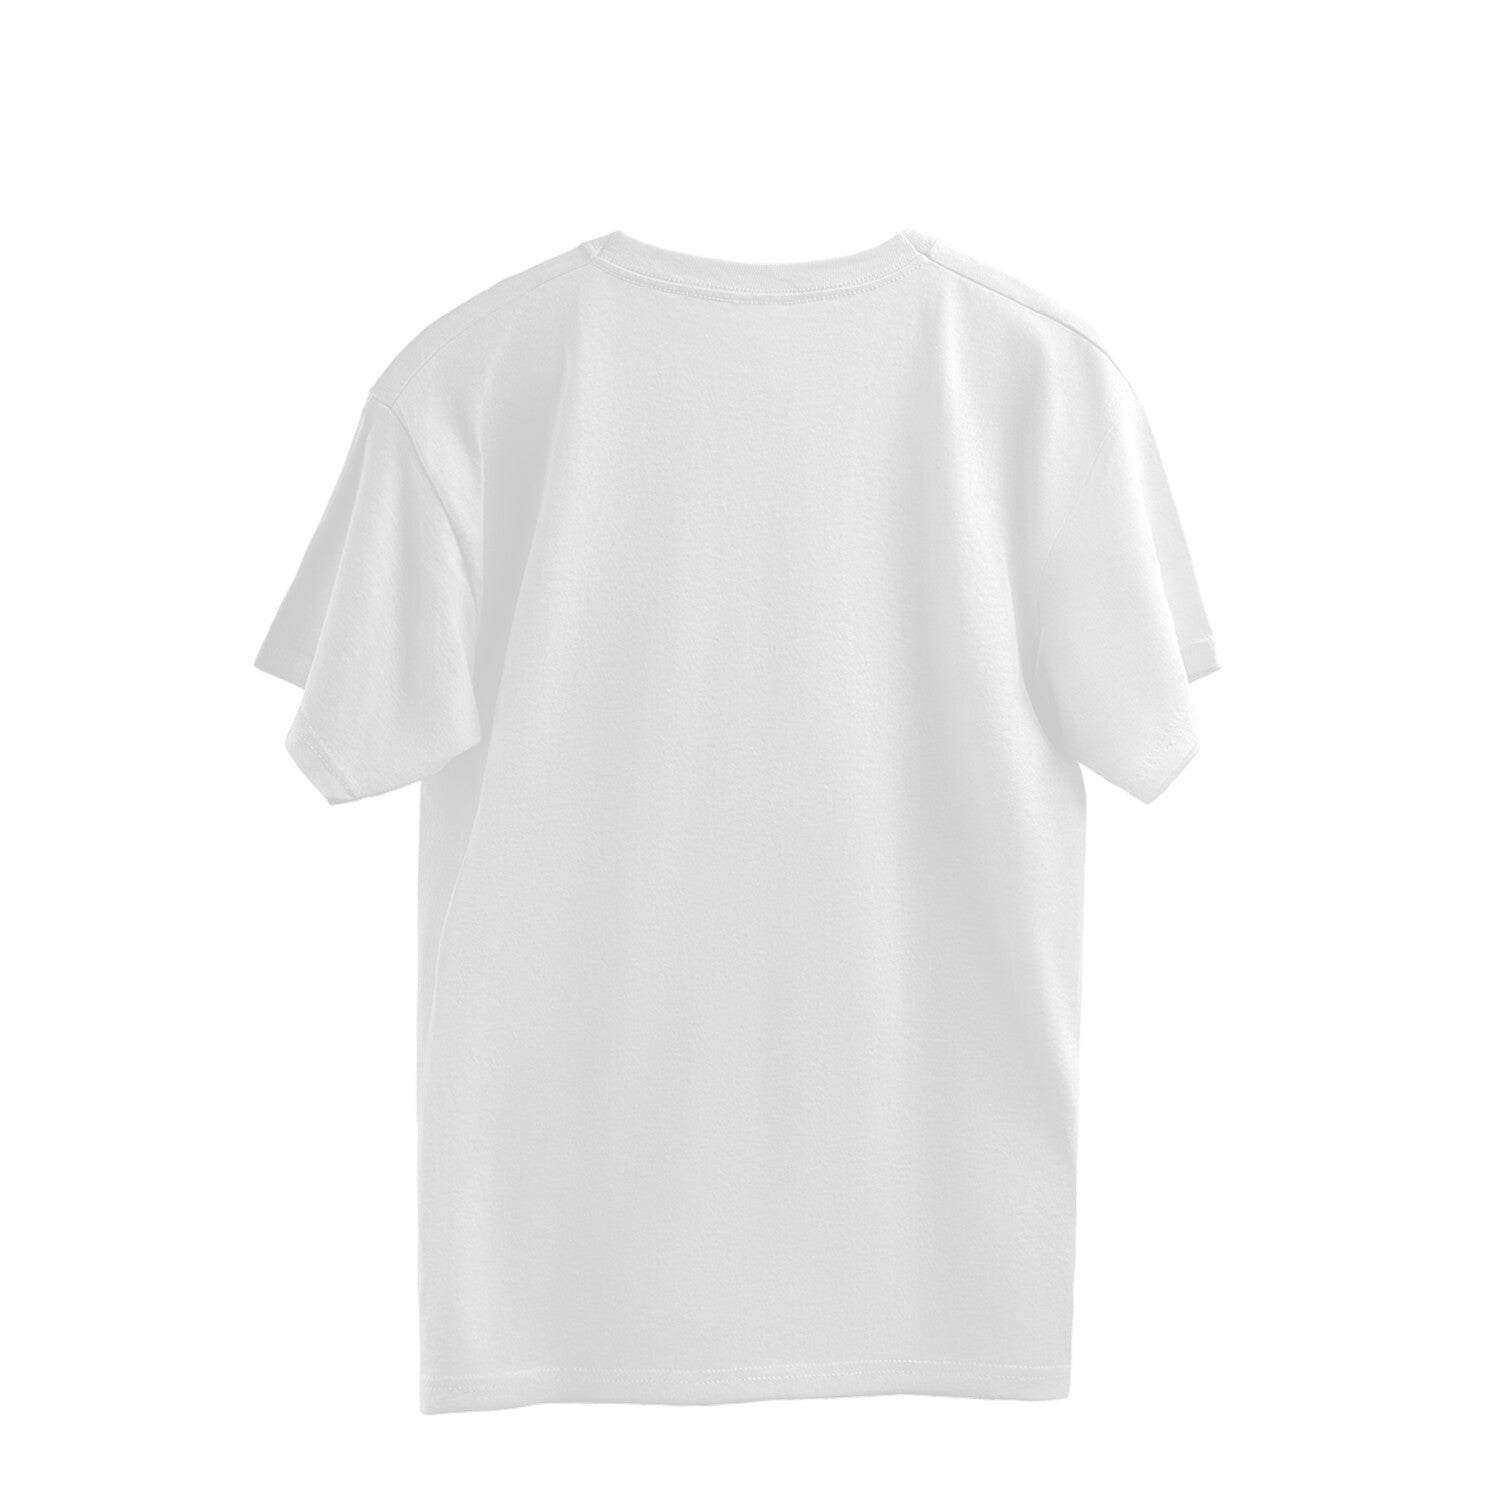 Men's White Over-Sized T-shirt